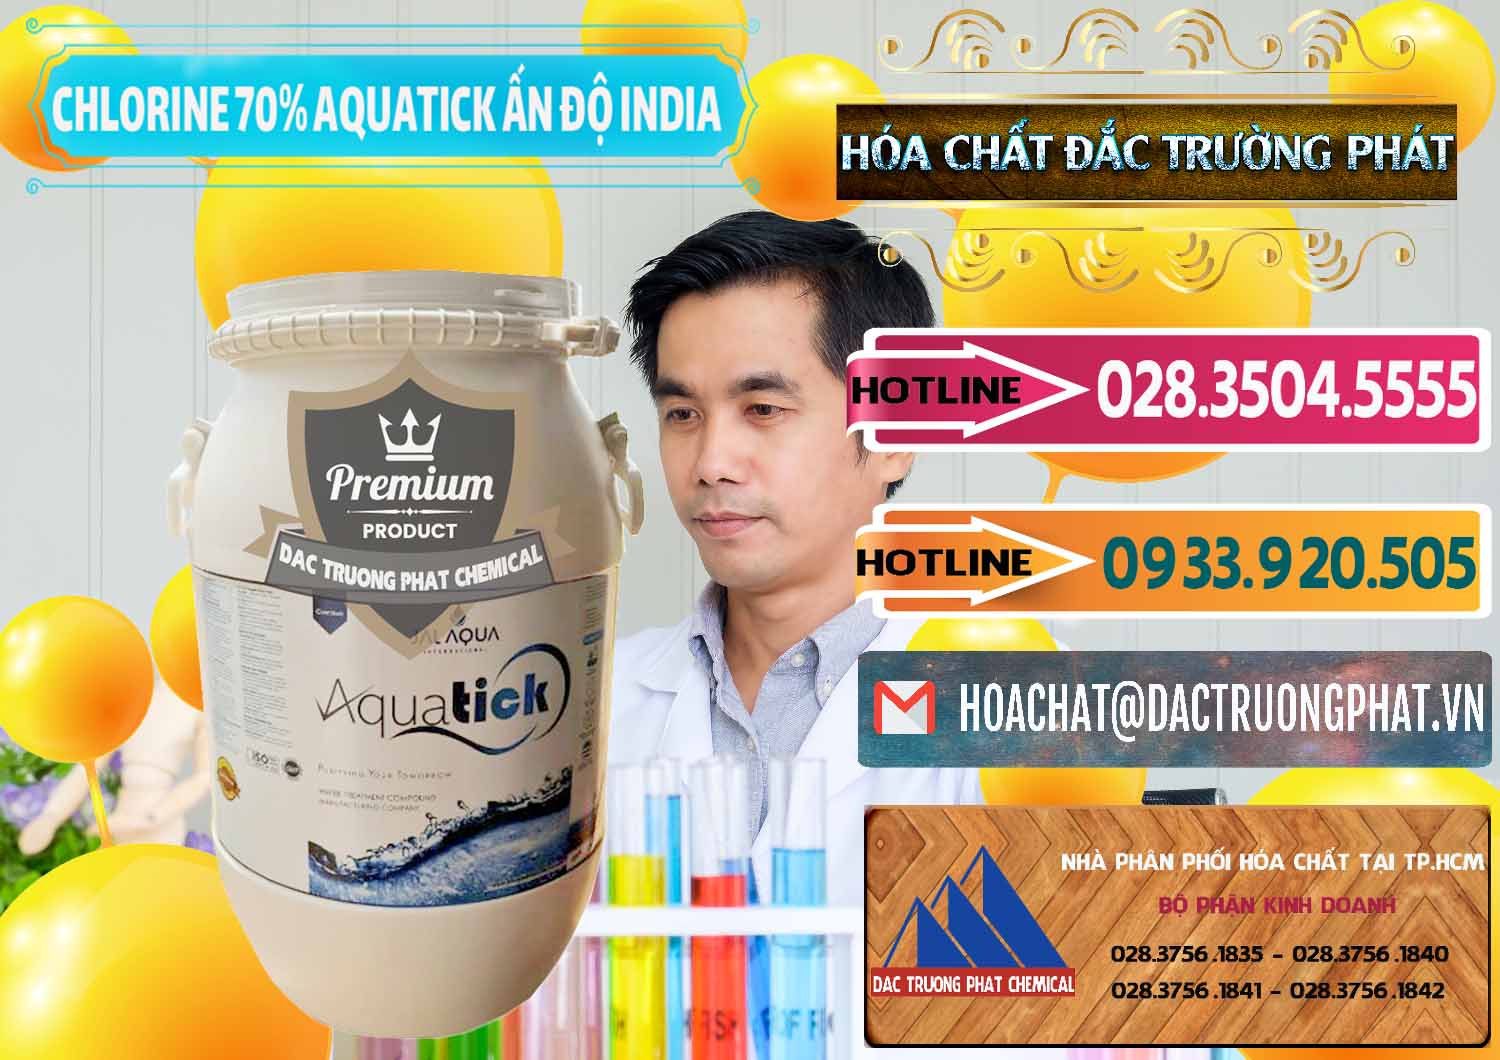 Cty chuyên bán _ phân phối Chlorine – Clorin 70% Aquatick Jal Aqua Ấn Độ India - 0215 - Chuyên phân phối & cung ứng hóa chất tại TP.HCM - dactruongphat.vn